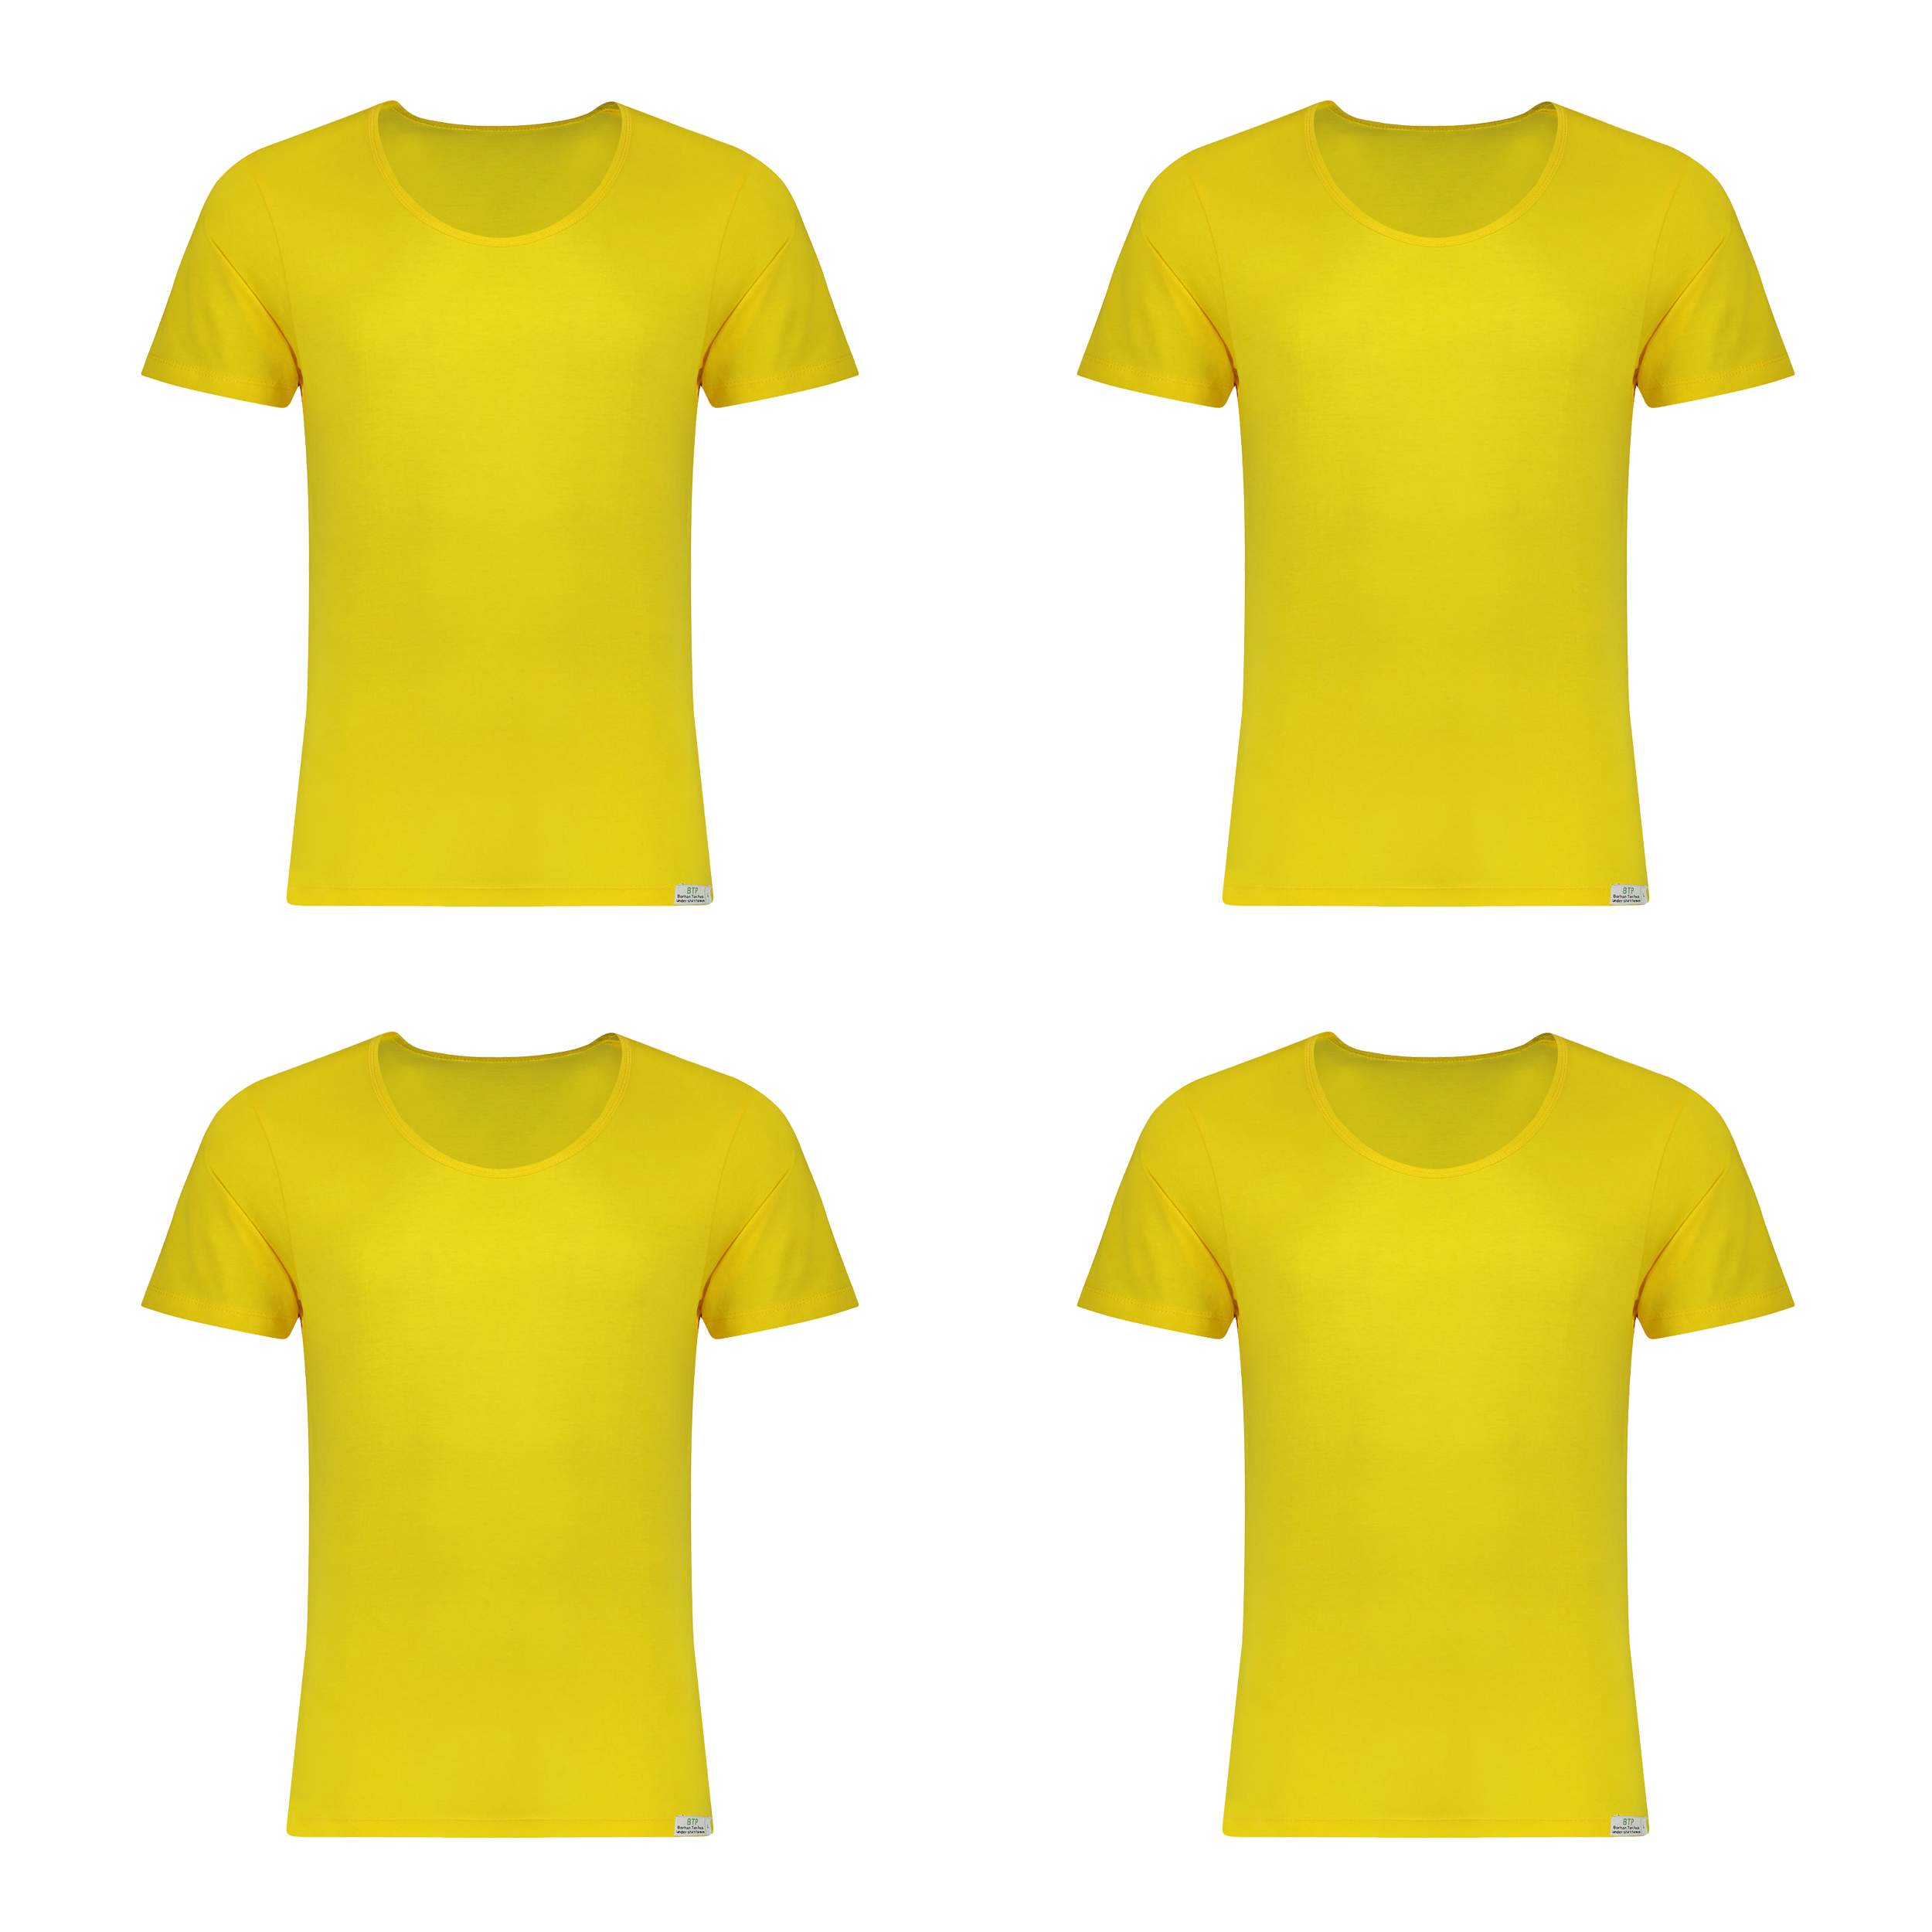  زیرپوش آستین دار مردانه برهان تن پوش مدل 5-02 بسته 4 عددی رنگ زرد